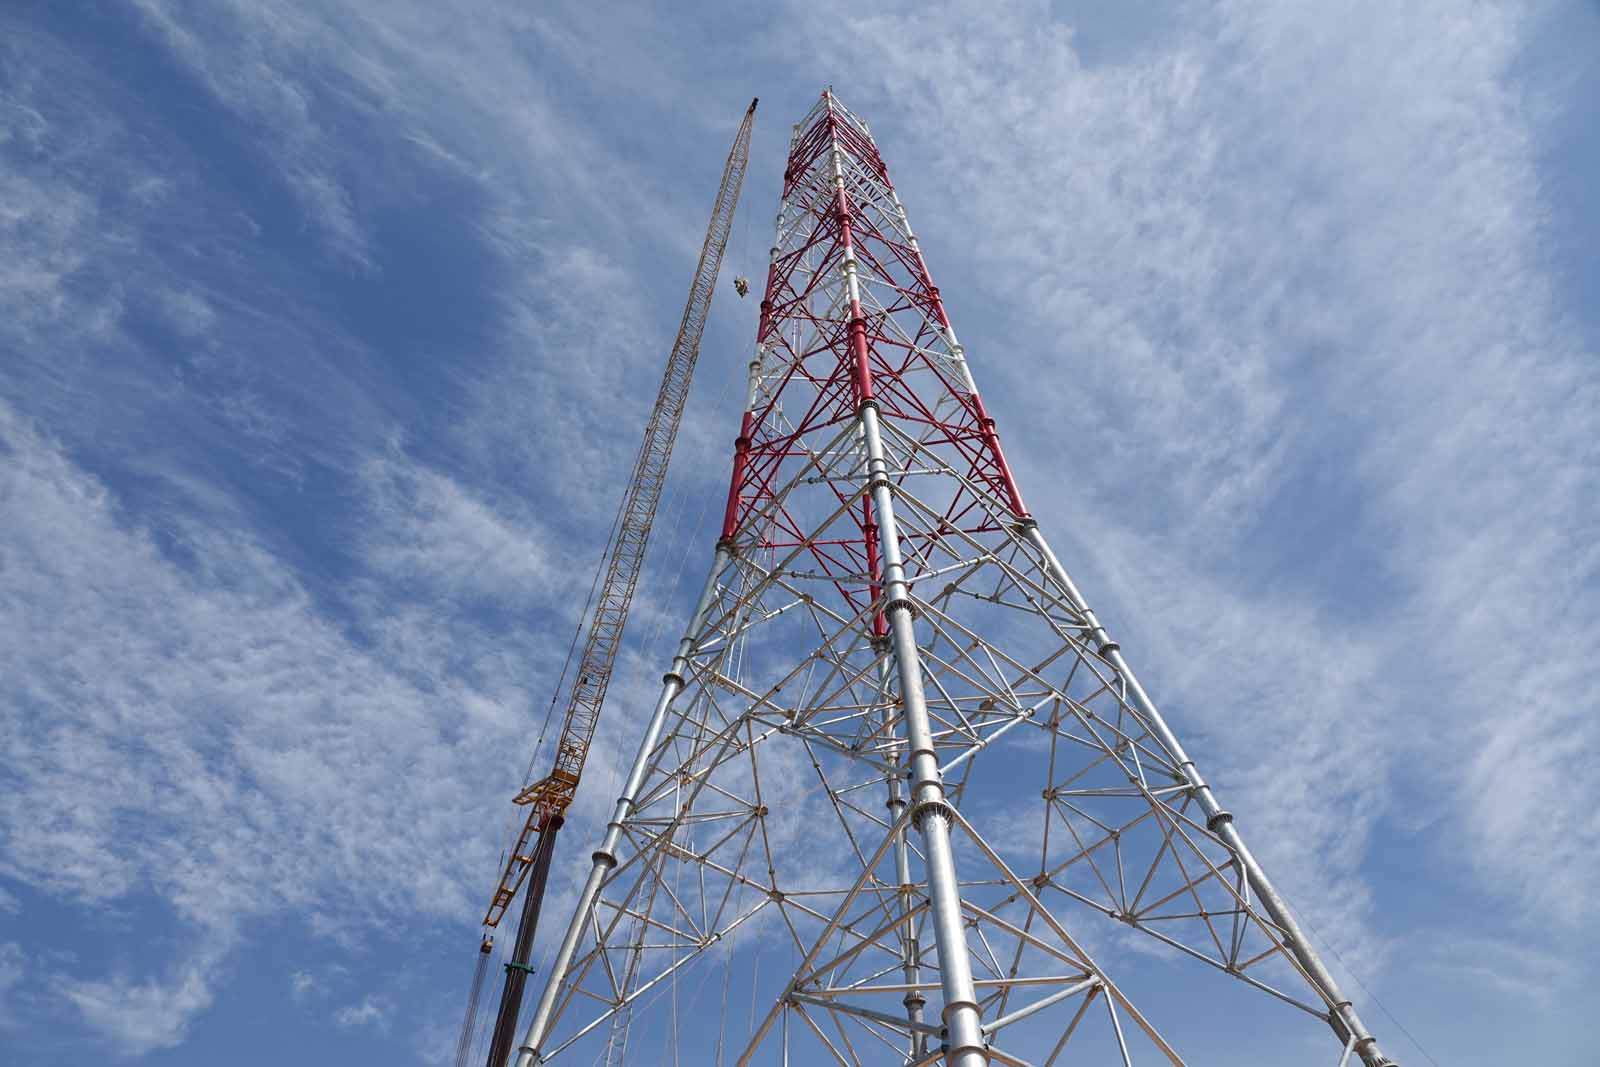 Cột điện số 175 cao 145m là cột cao nhất trên tuyến của dự án 500KV mạch 3 ở Hà Tĩnh. Ảnh: Trần Tuấn.